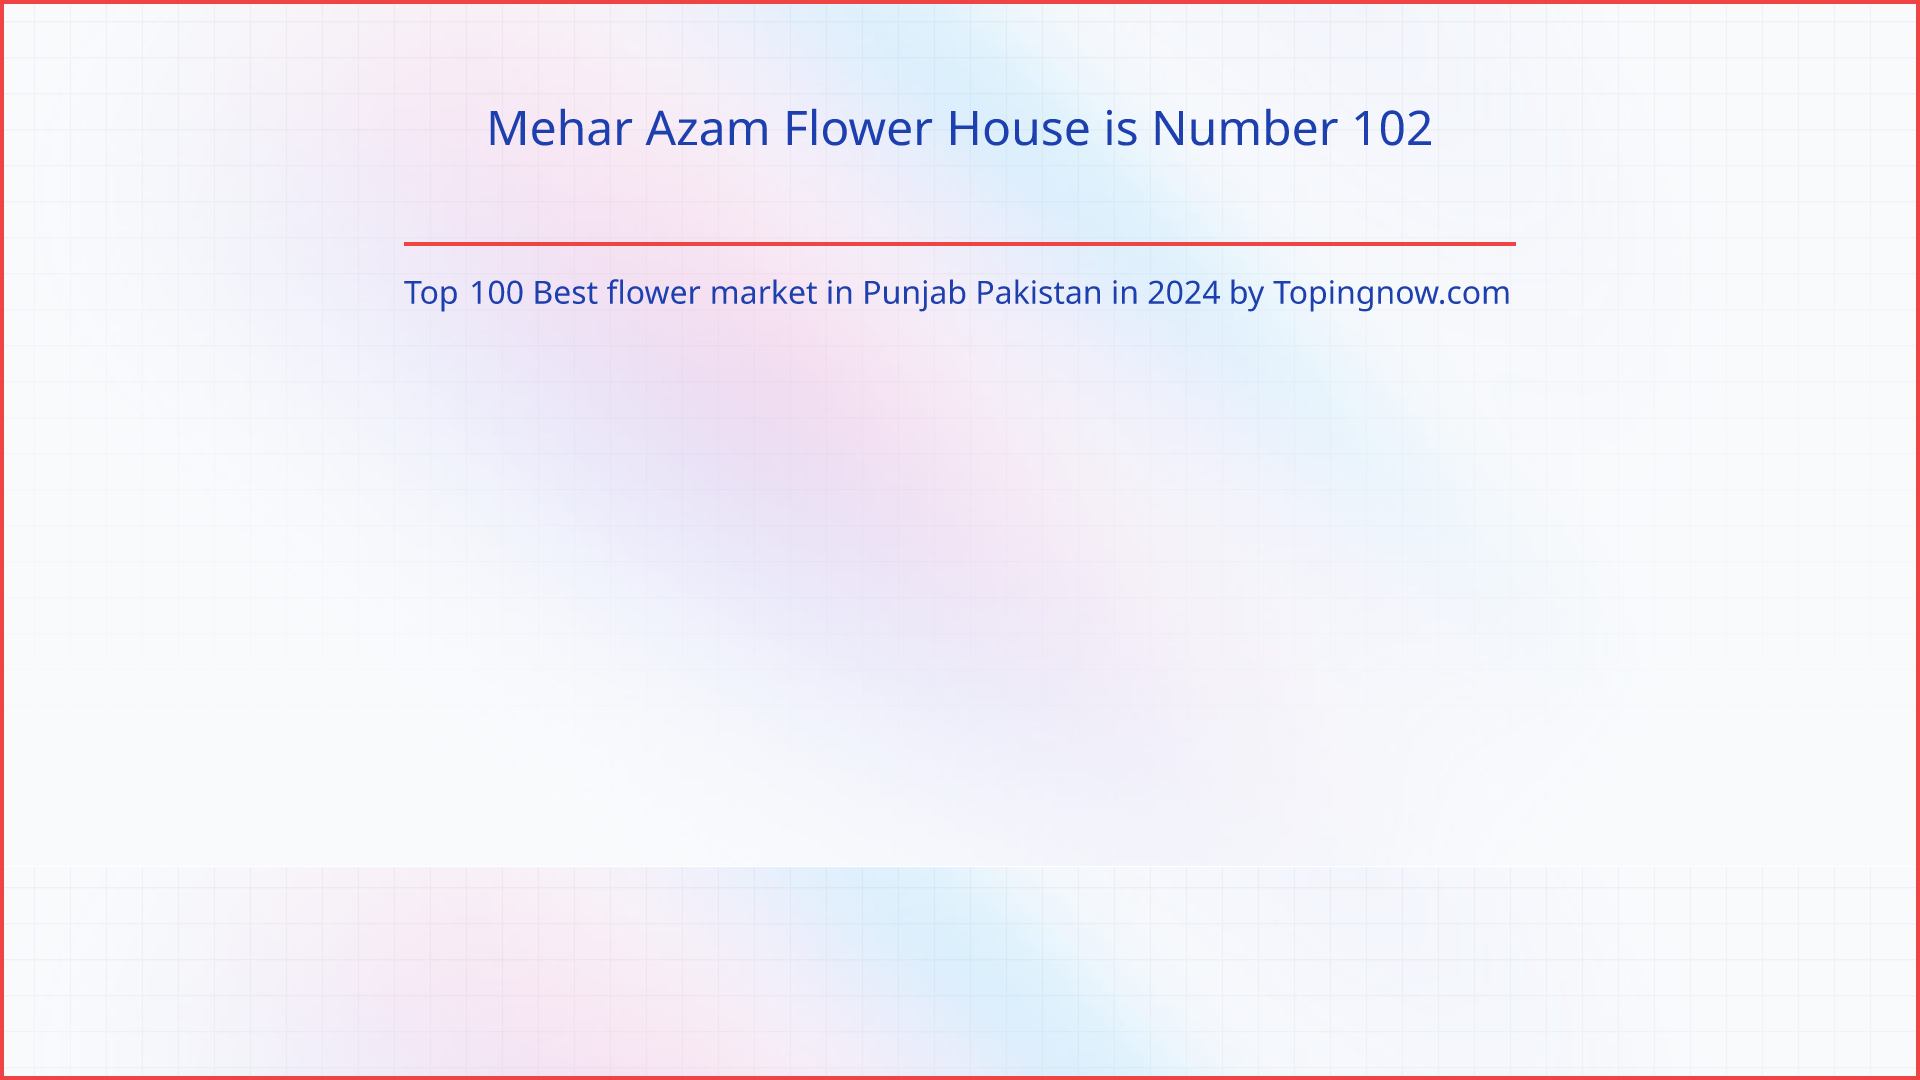 Mehar Azam Flower House: Top 100 Best flower market in Punjab Pakistan in 2024